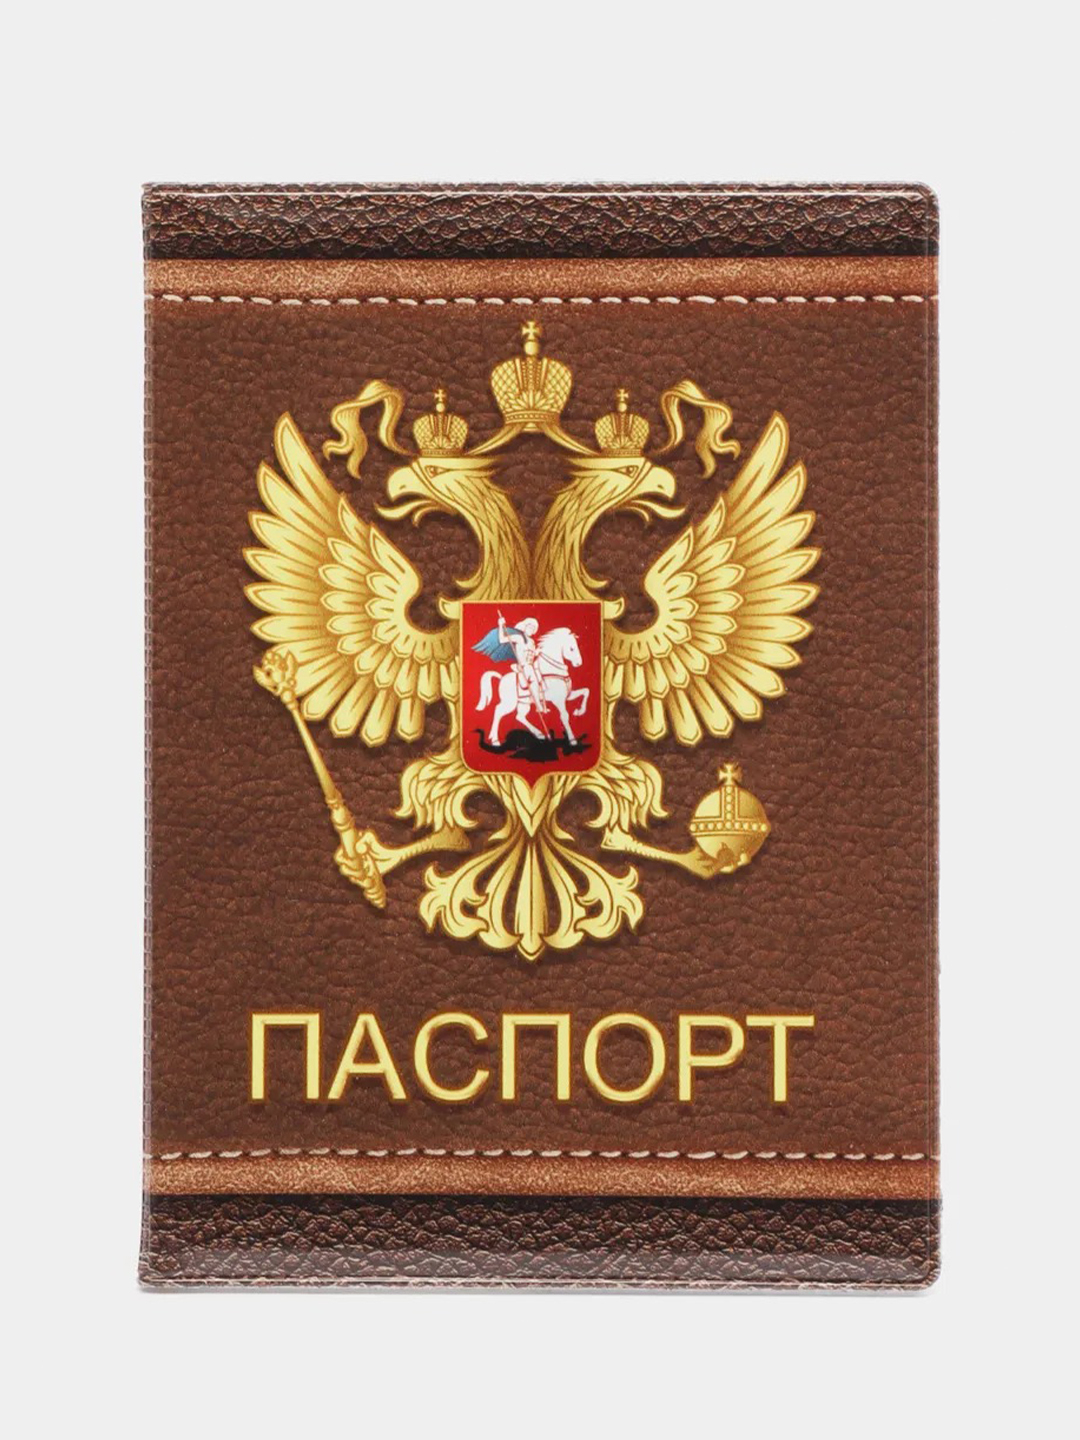 Обложка для паспорта с гербом